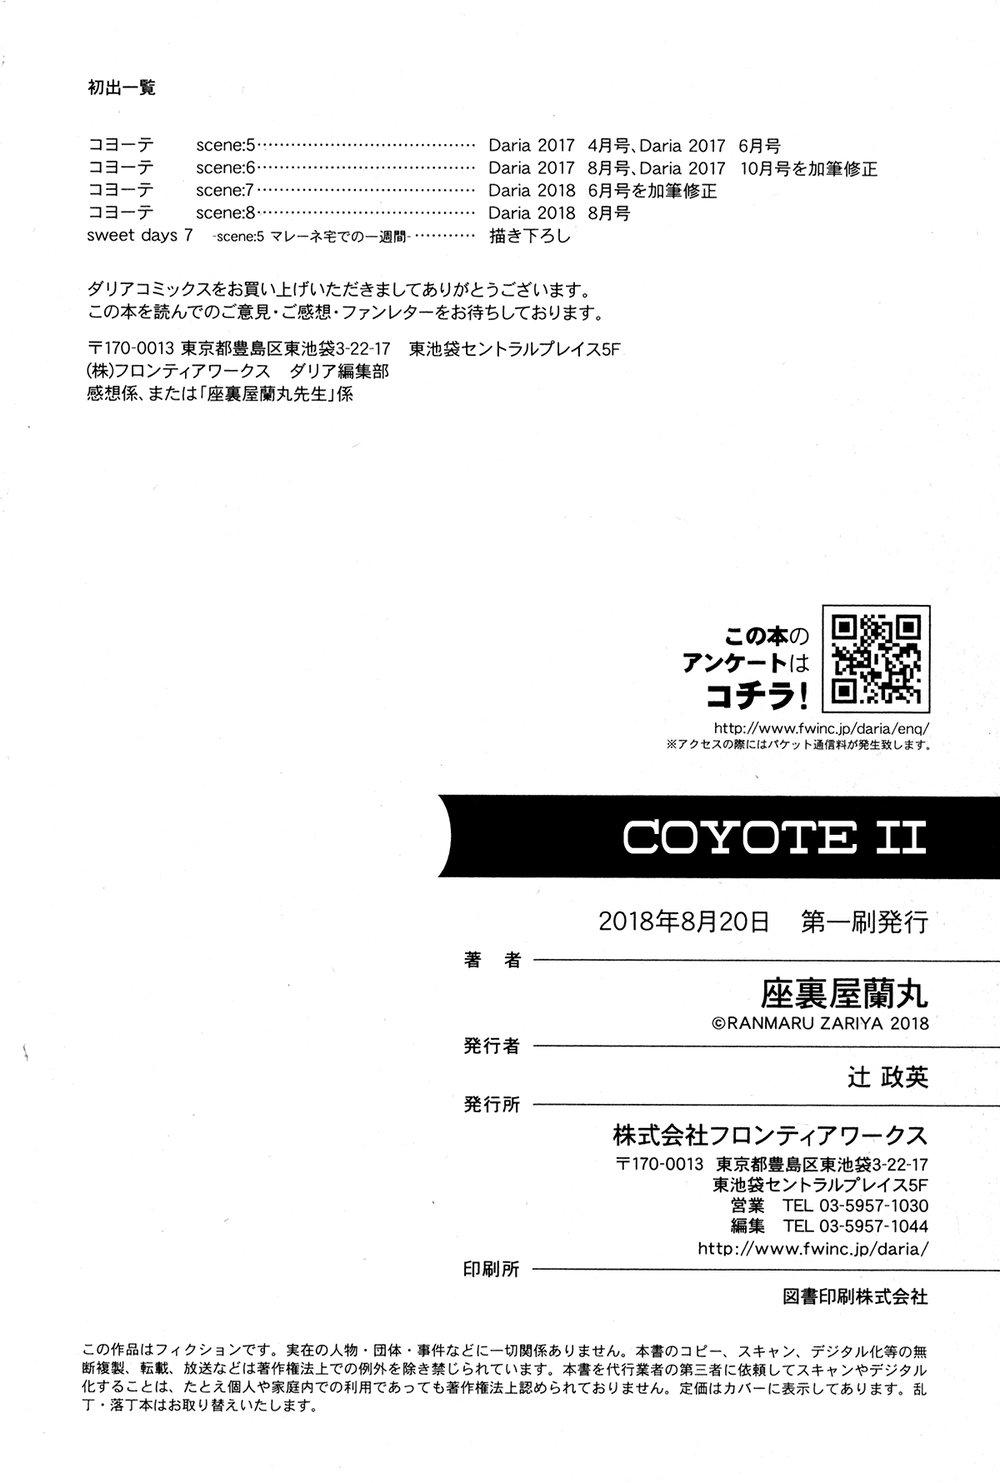 Coyote vol.2 + Extras 180